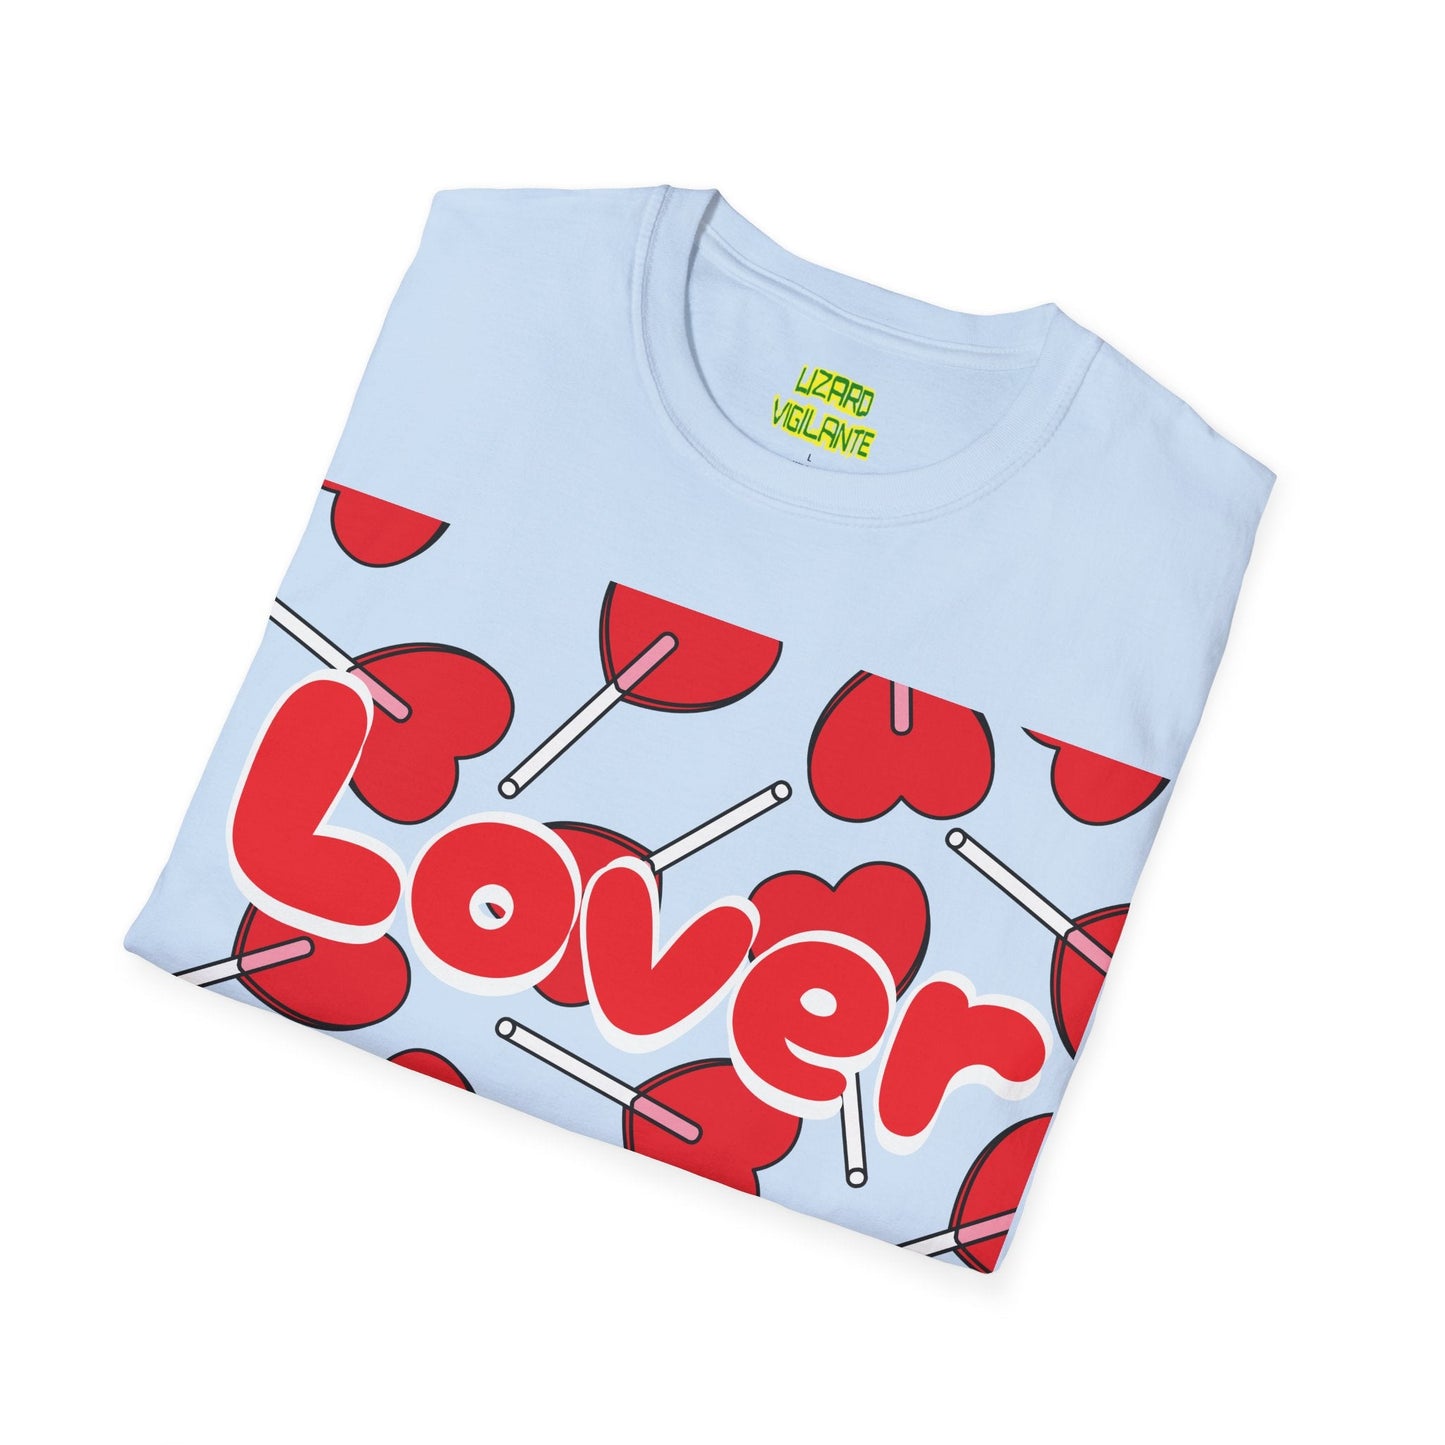 Valentine’s Day Lover Sucker Unisex Softstyle T-Shirt - Lizard Vigilante